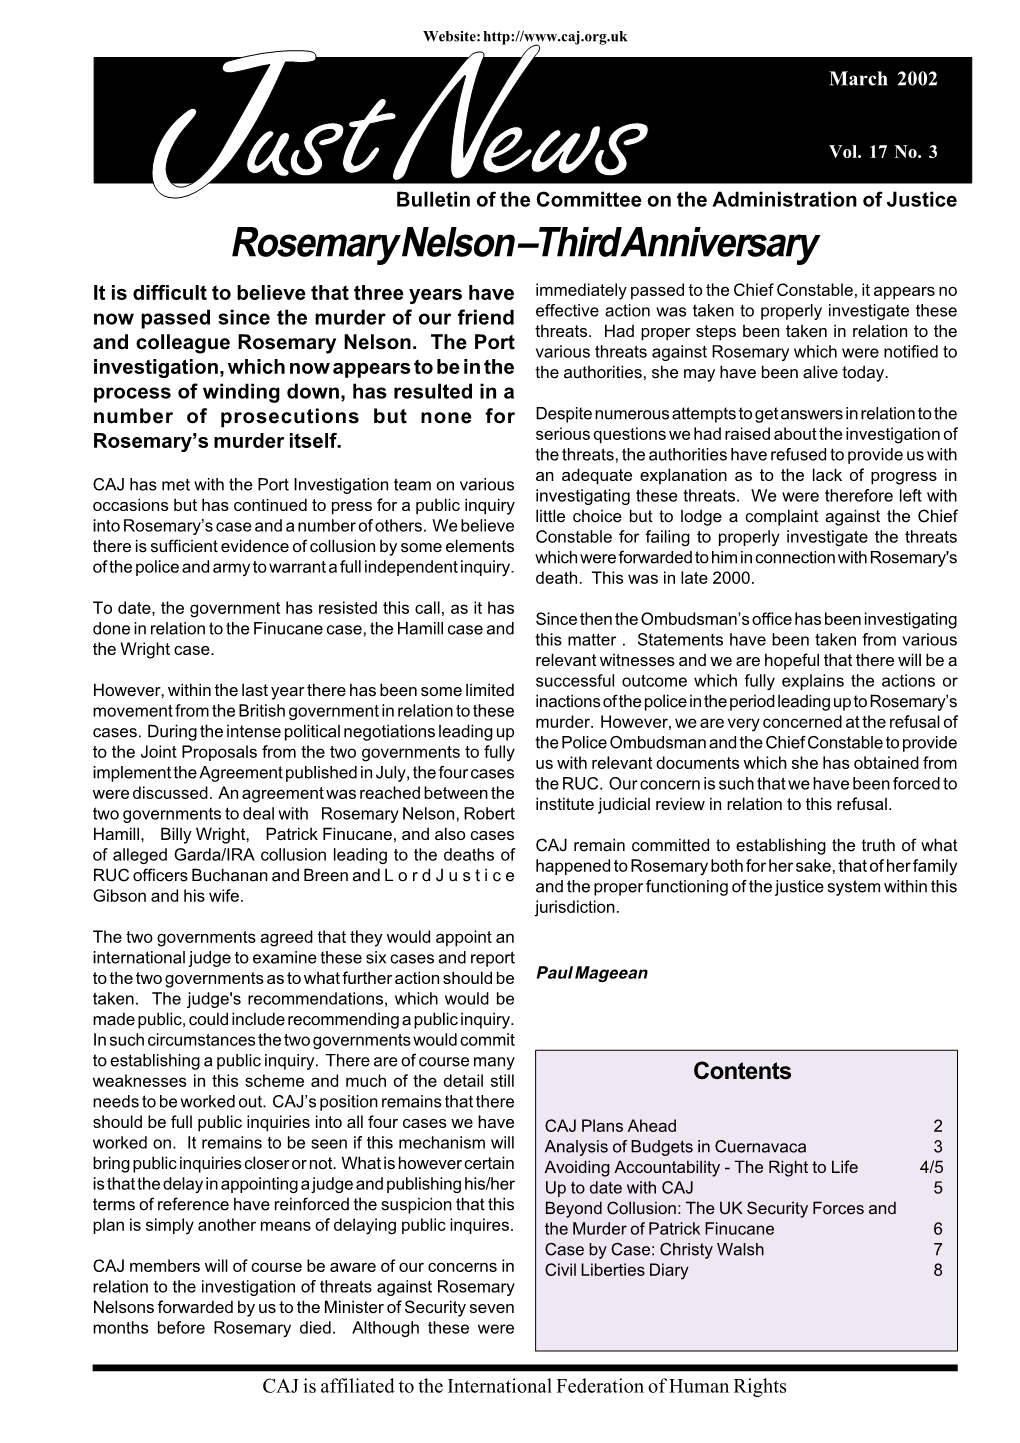 Rosemary Nelson – Third Anniversary